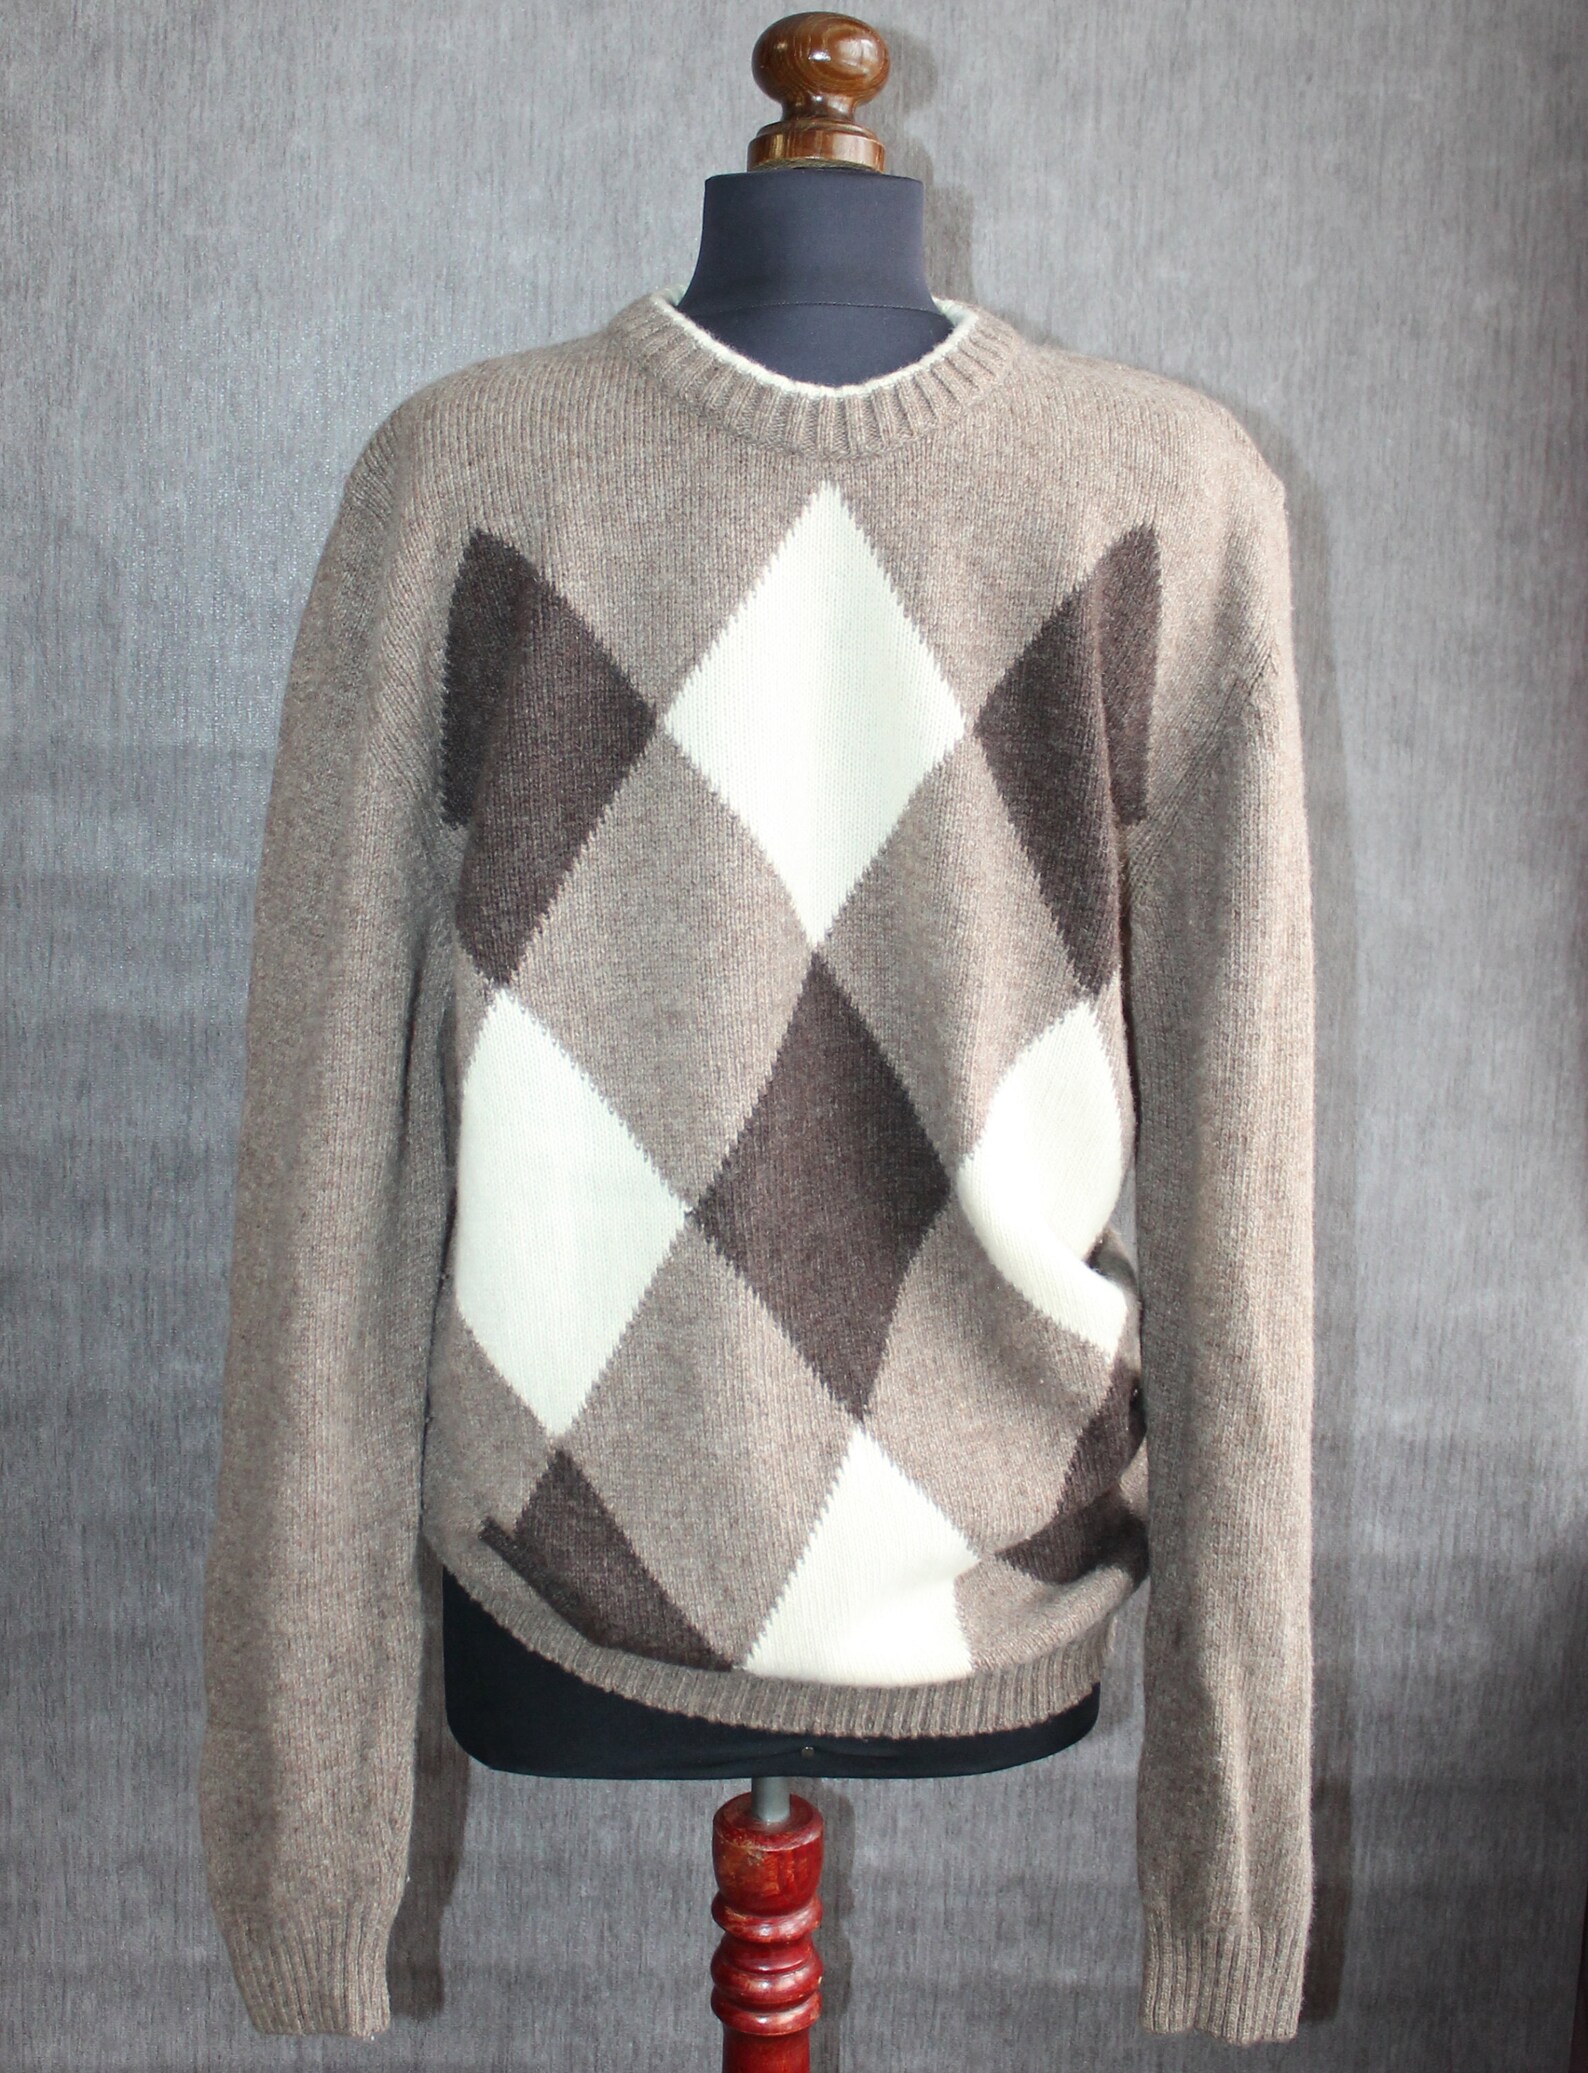 Vintage brown argyle sweater Wool jumper men Dark academia | Etsy